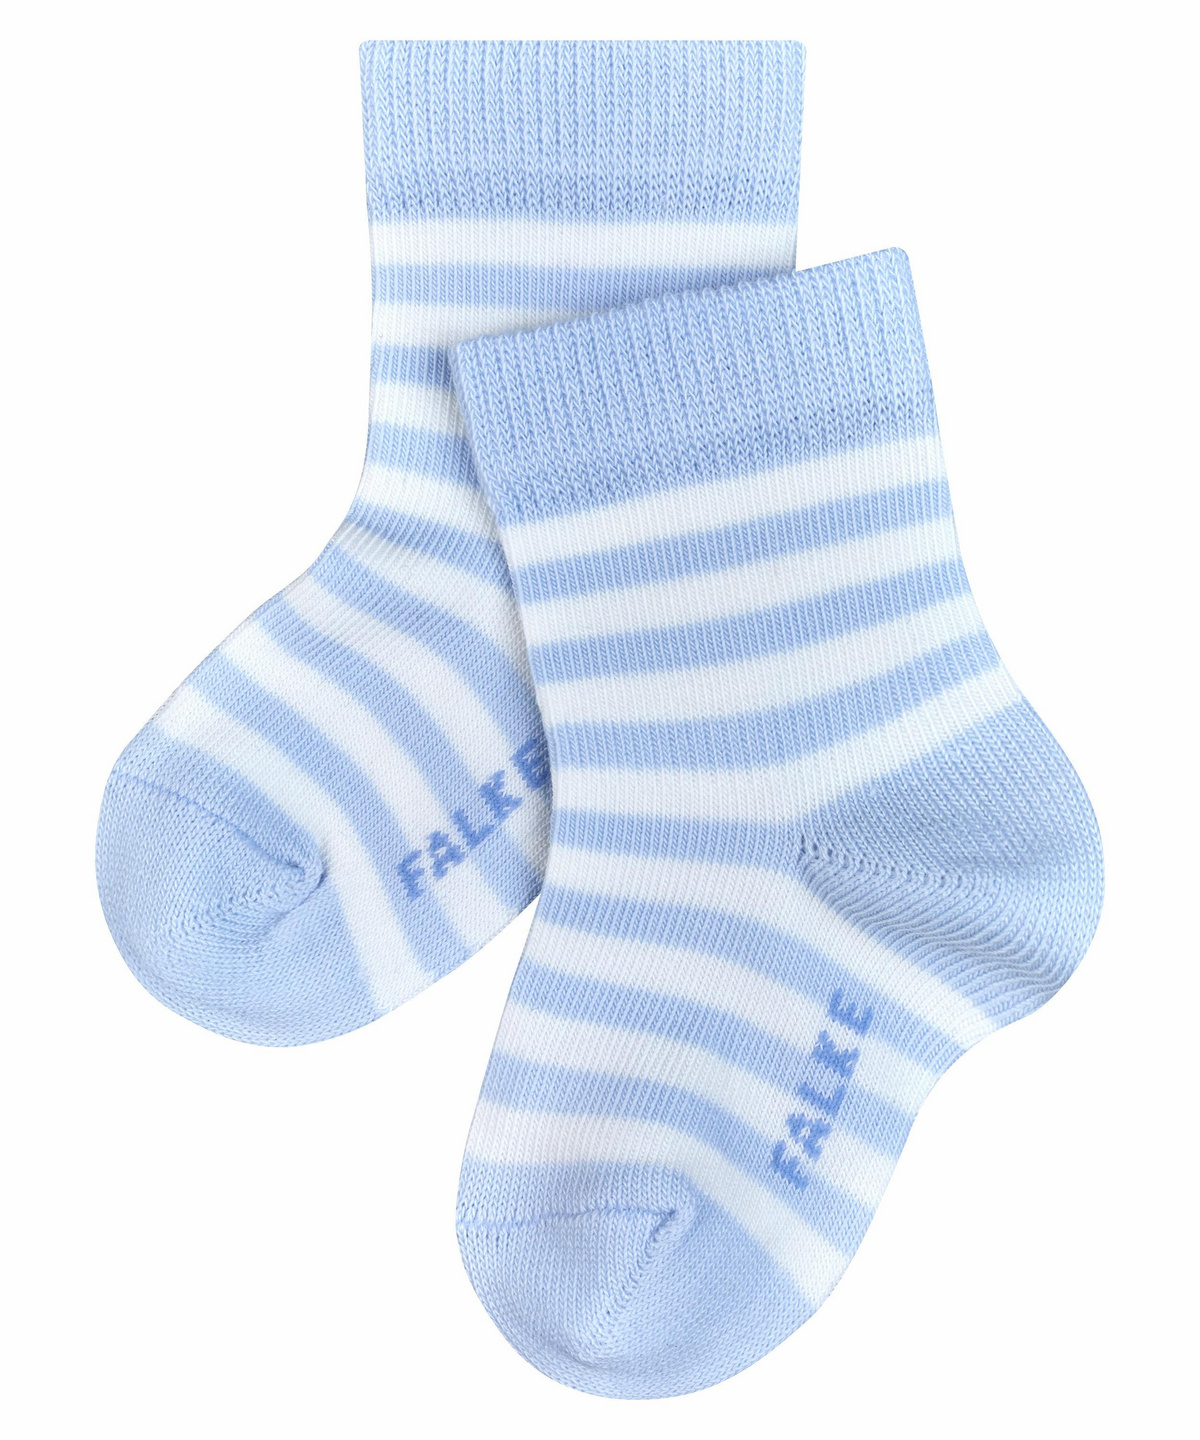 FALKE Socken Stripe Baumwolle Größe 62-92 Baby weiß grau viele weitere Farben kurze Babysocken mit Motiv dünn bunt und gestreift 1 Paar 